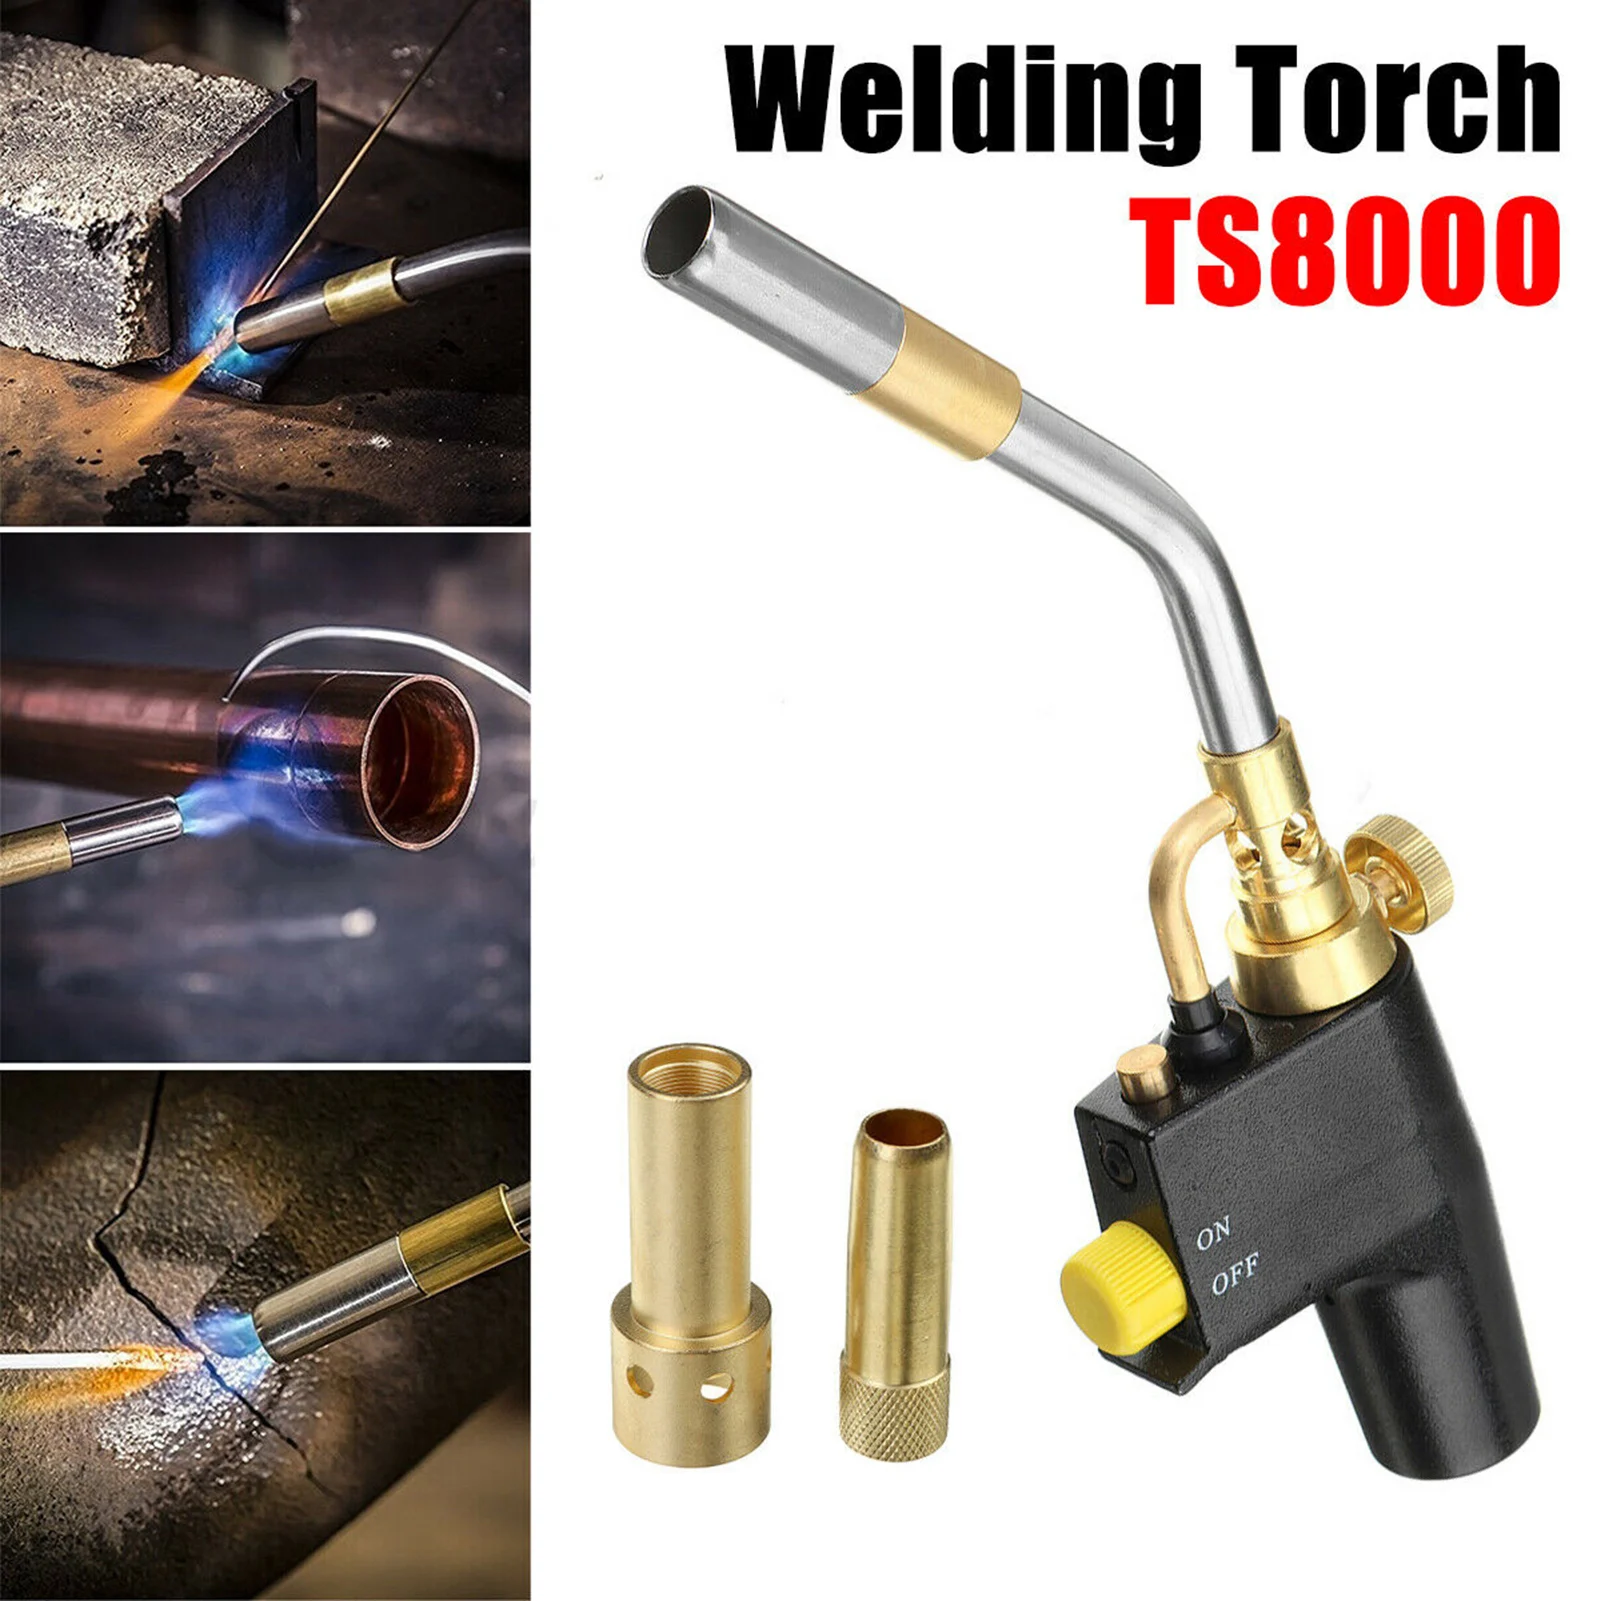 

TS8000 Trigger Brass Mapp Gas Torch High Intensity Propane Adjustable Welding Torch